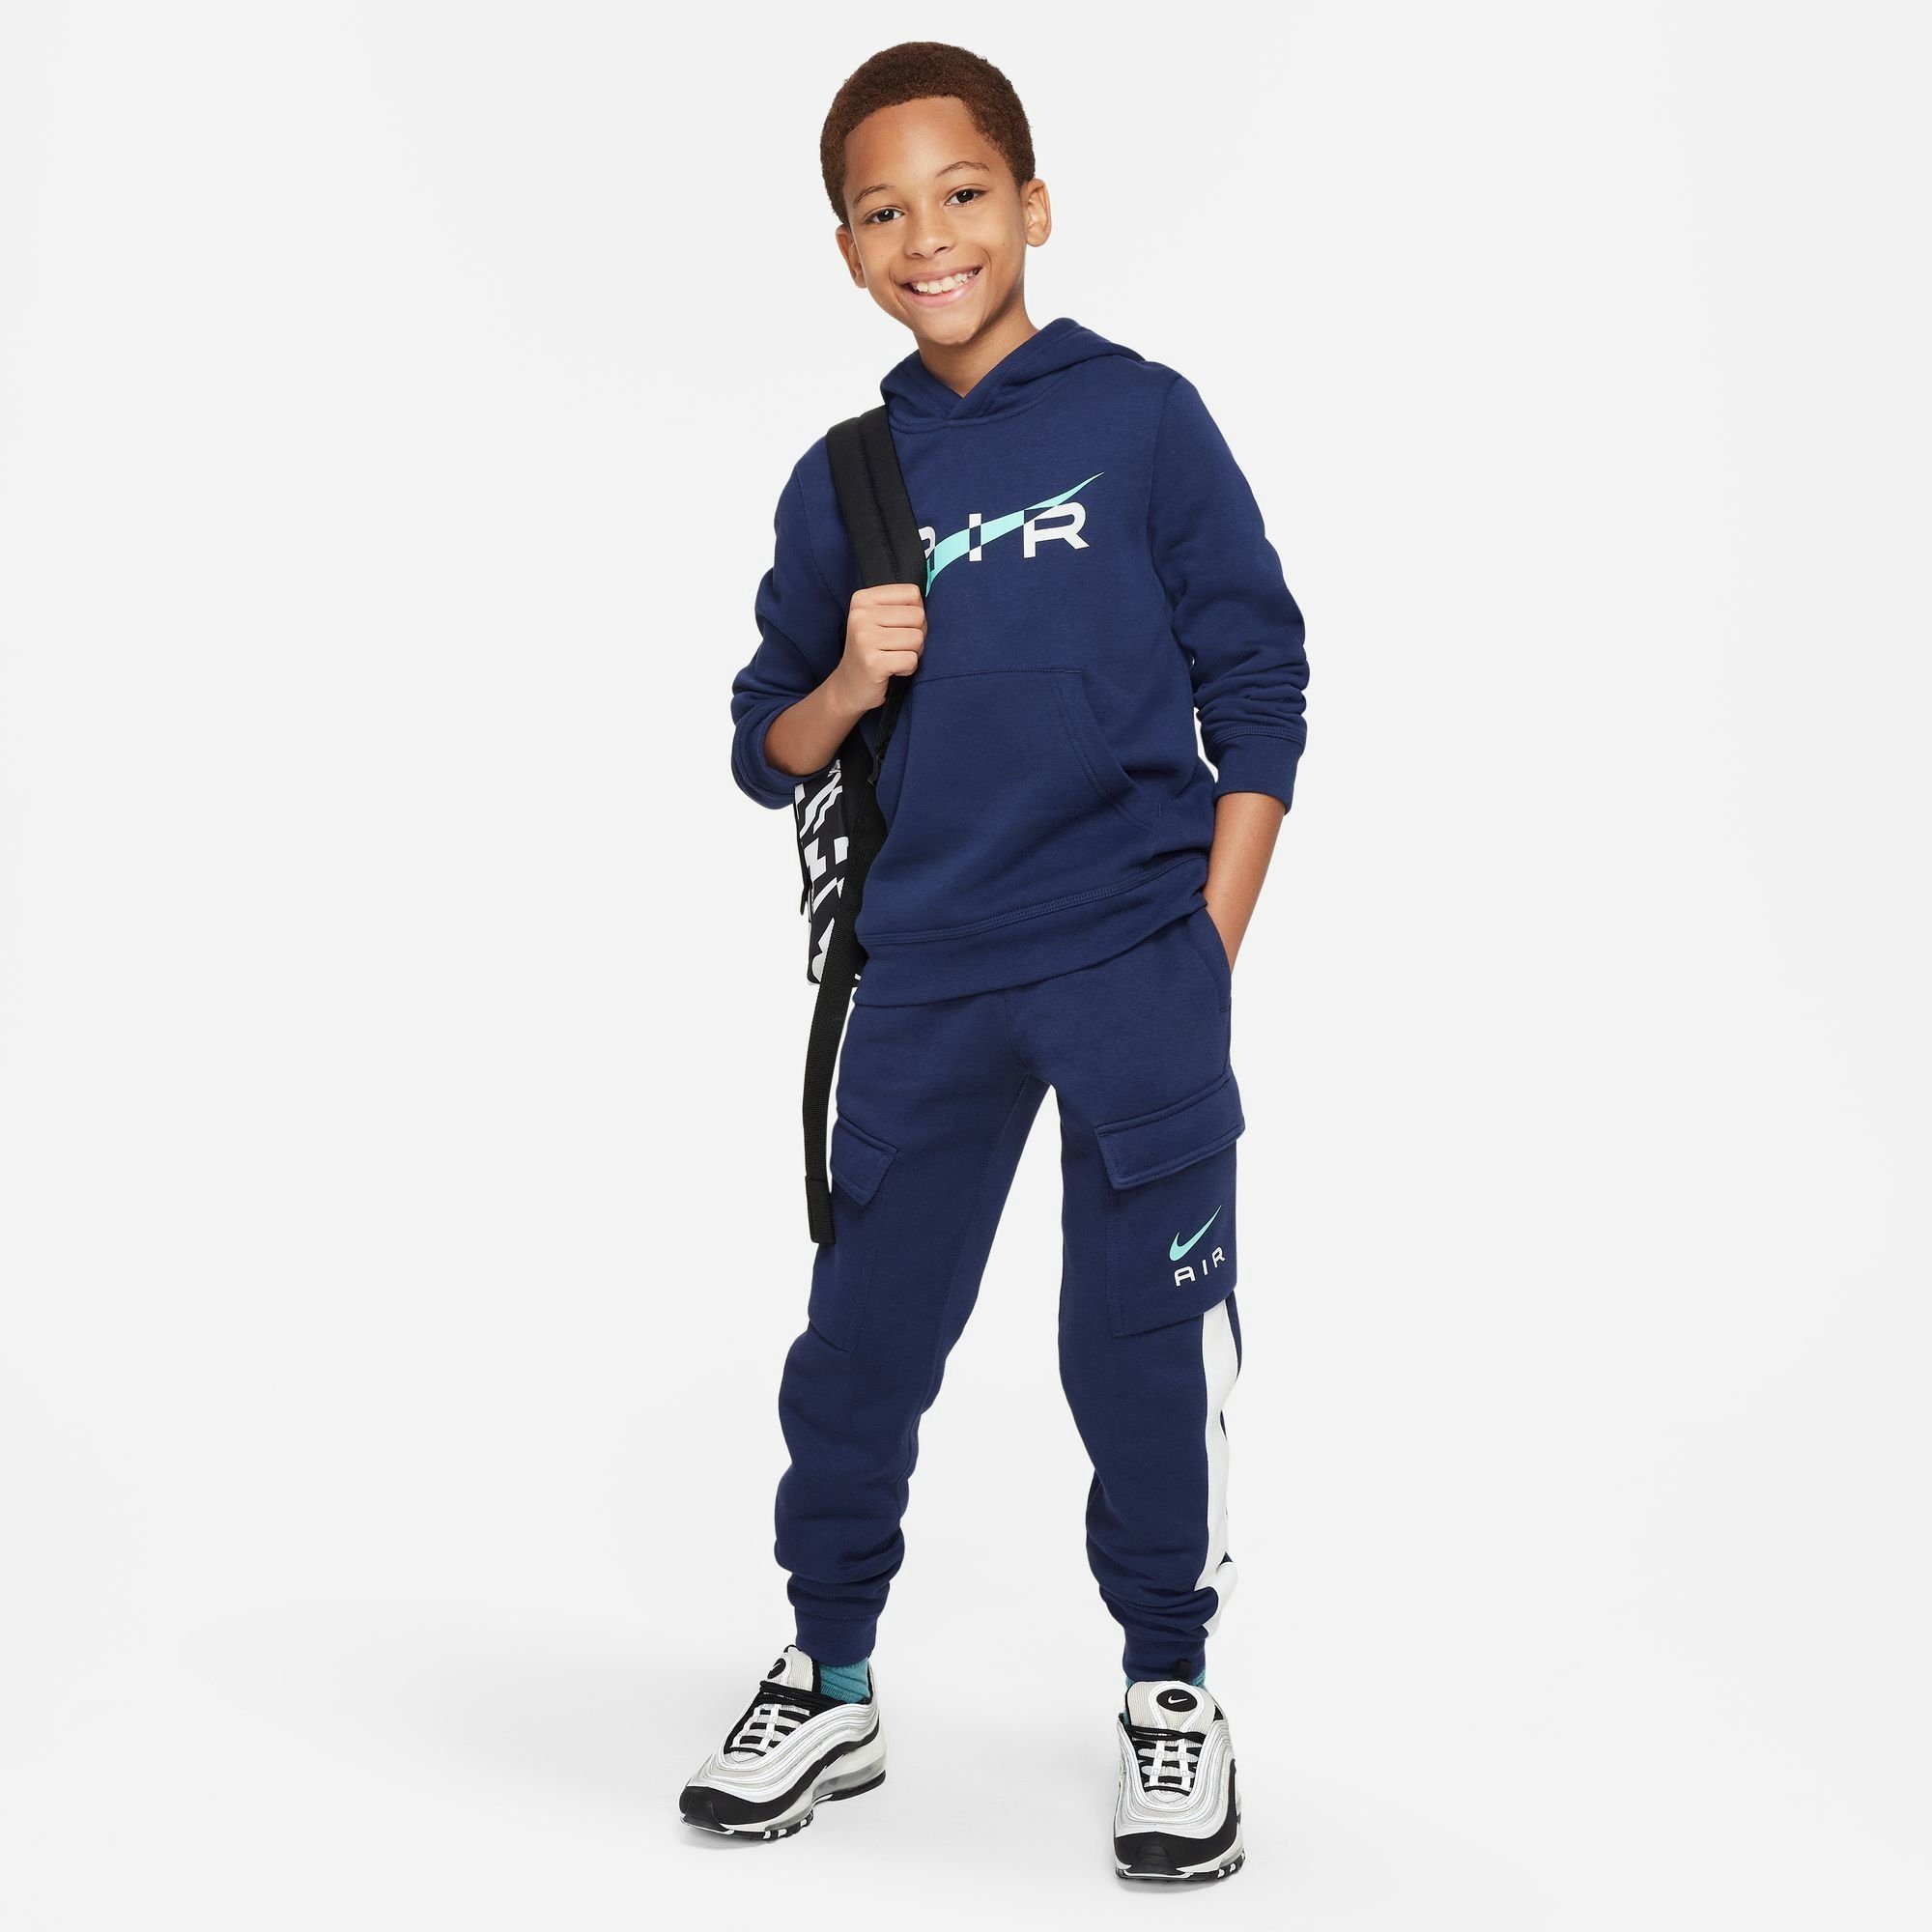 AIR PANT N NSW Nike Jogginghose BB für CARGO - FLC Sportswear Kinder